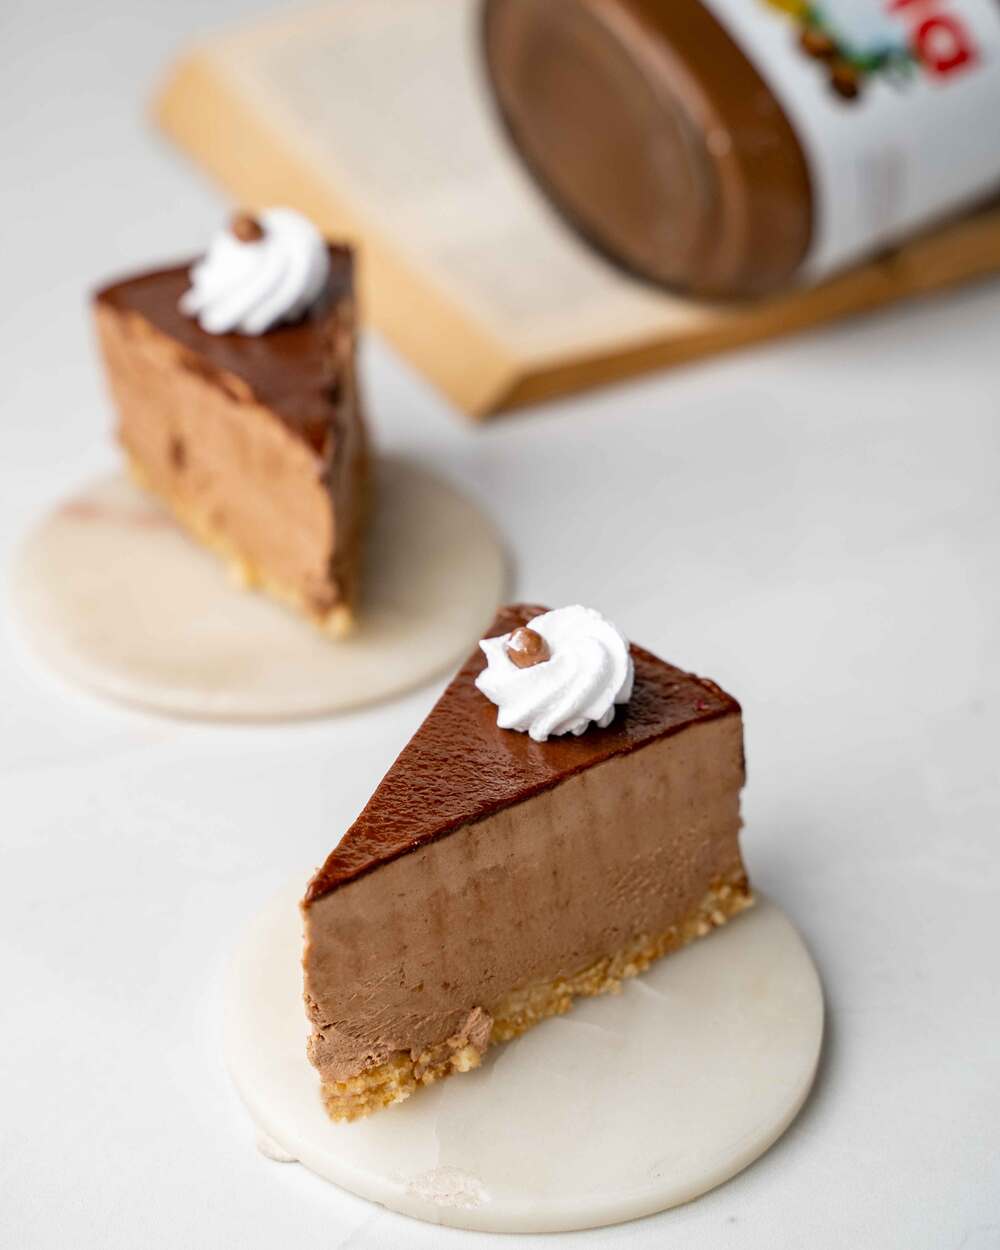 Vanilla pastry cake recipe! Vanilla cake – Bakery style - YouTube